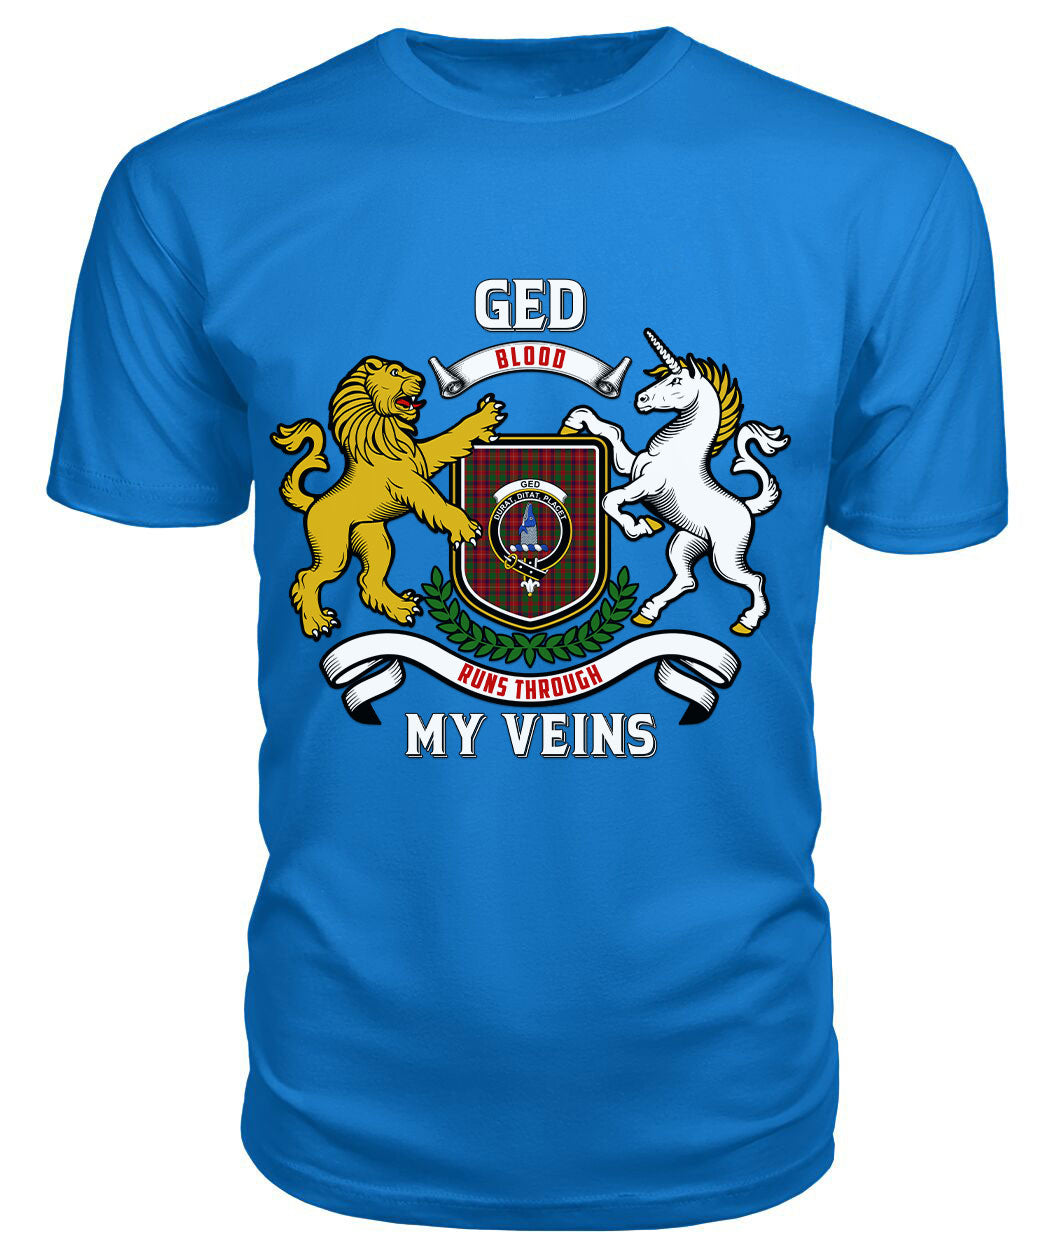 Ged Tartan Crest 2D T-shirt - Blood Runs Through My Veins Style